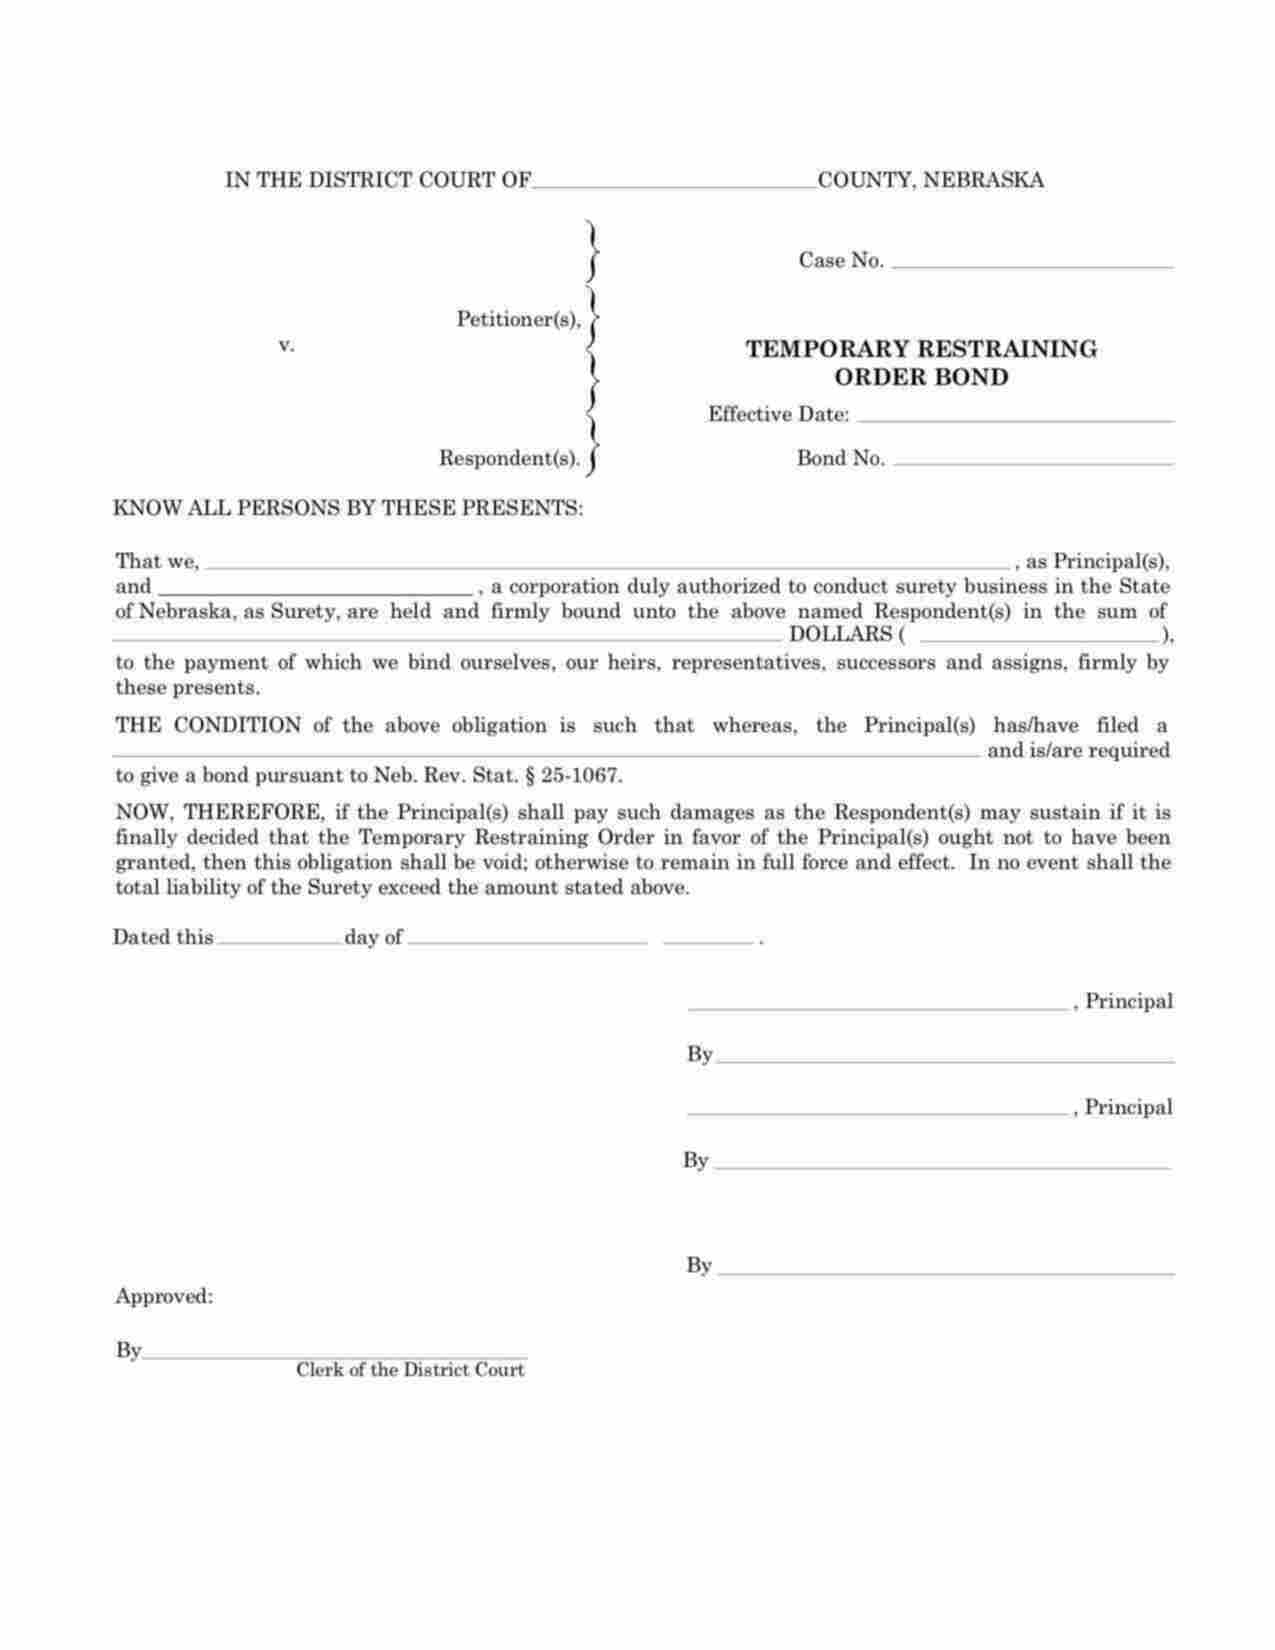 Nebraska Temporary Restraining Order Bond Form